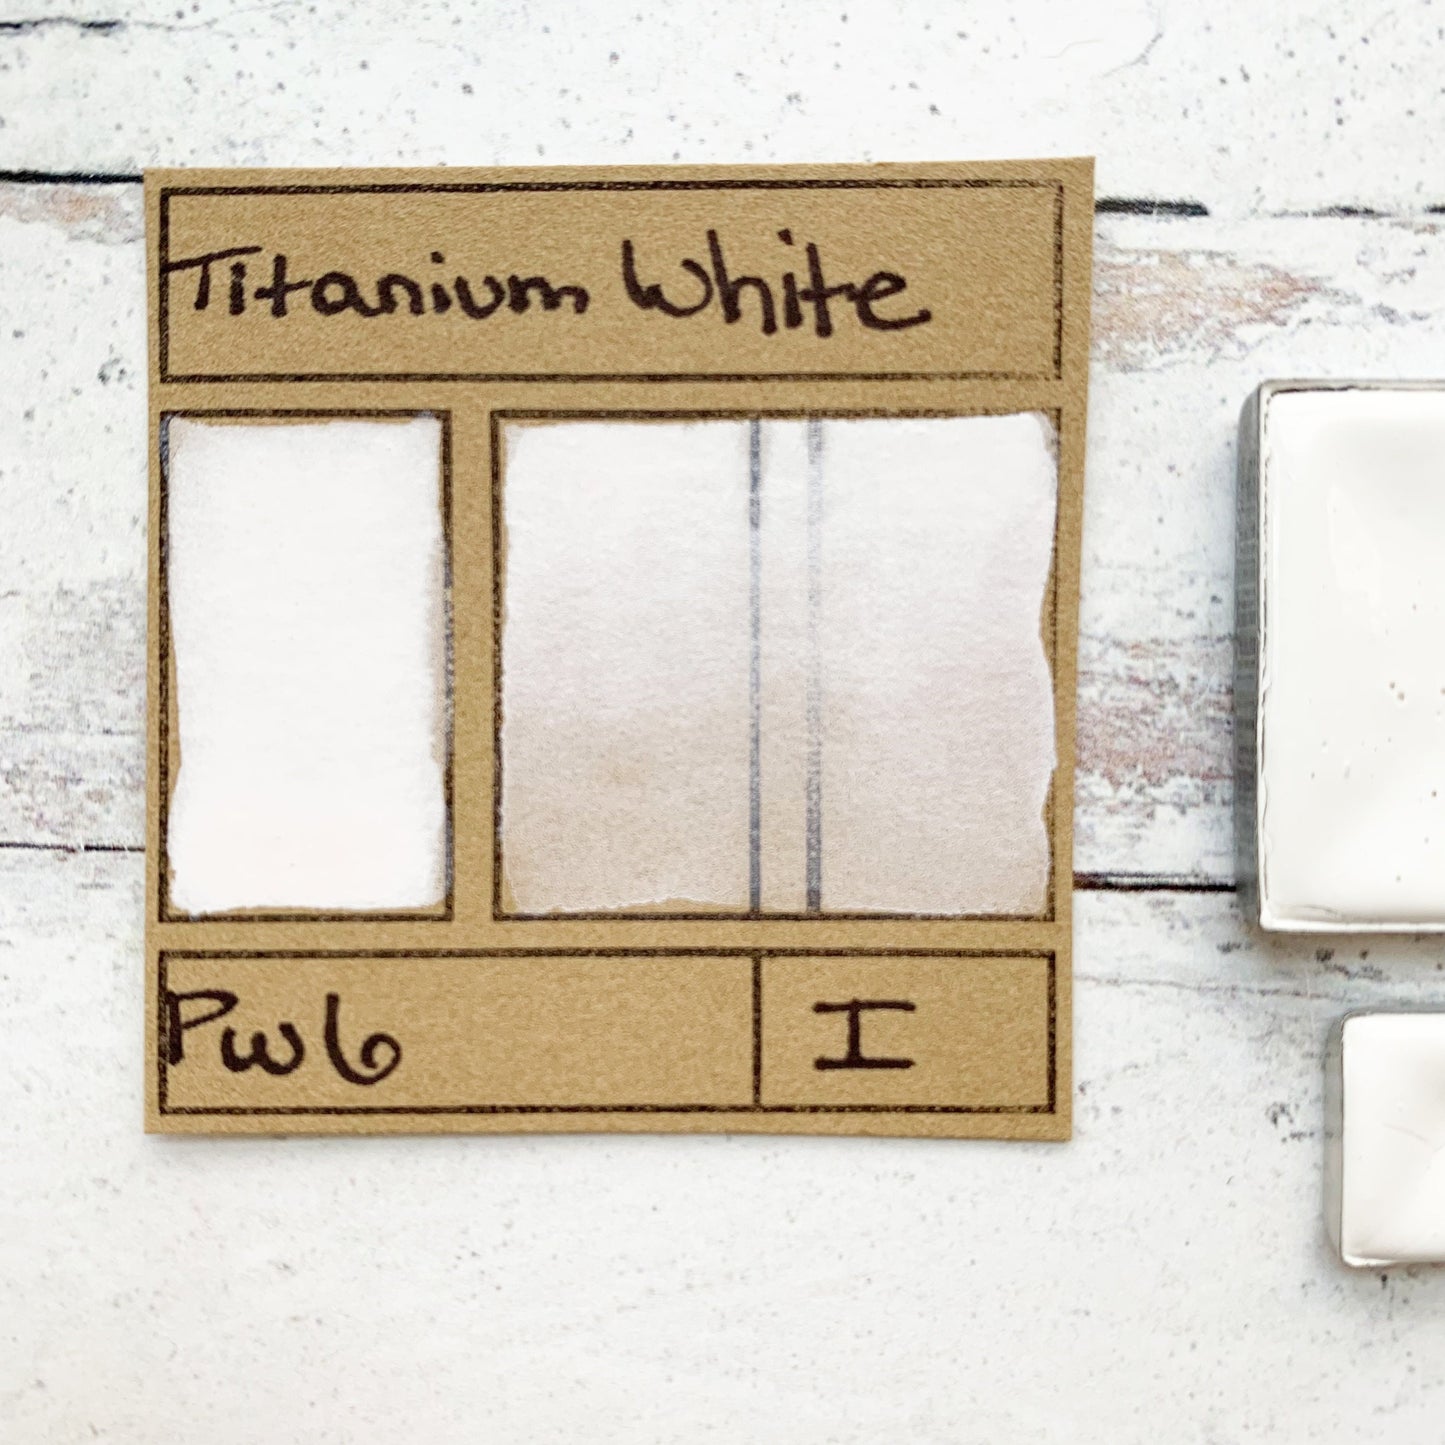 Titanium White. Half pan, full pan or bottle cap of handmade watercolor paint